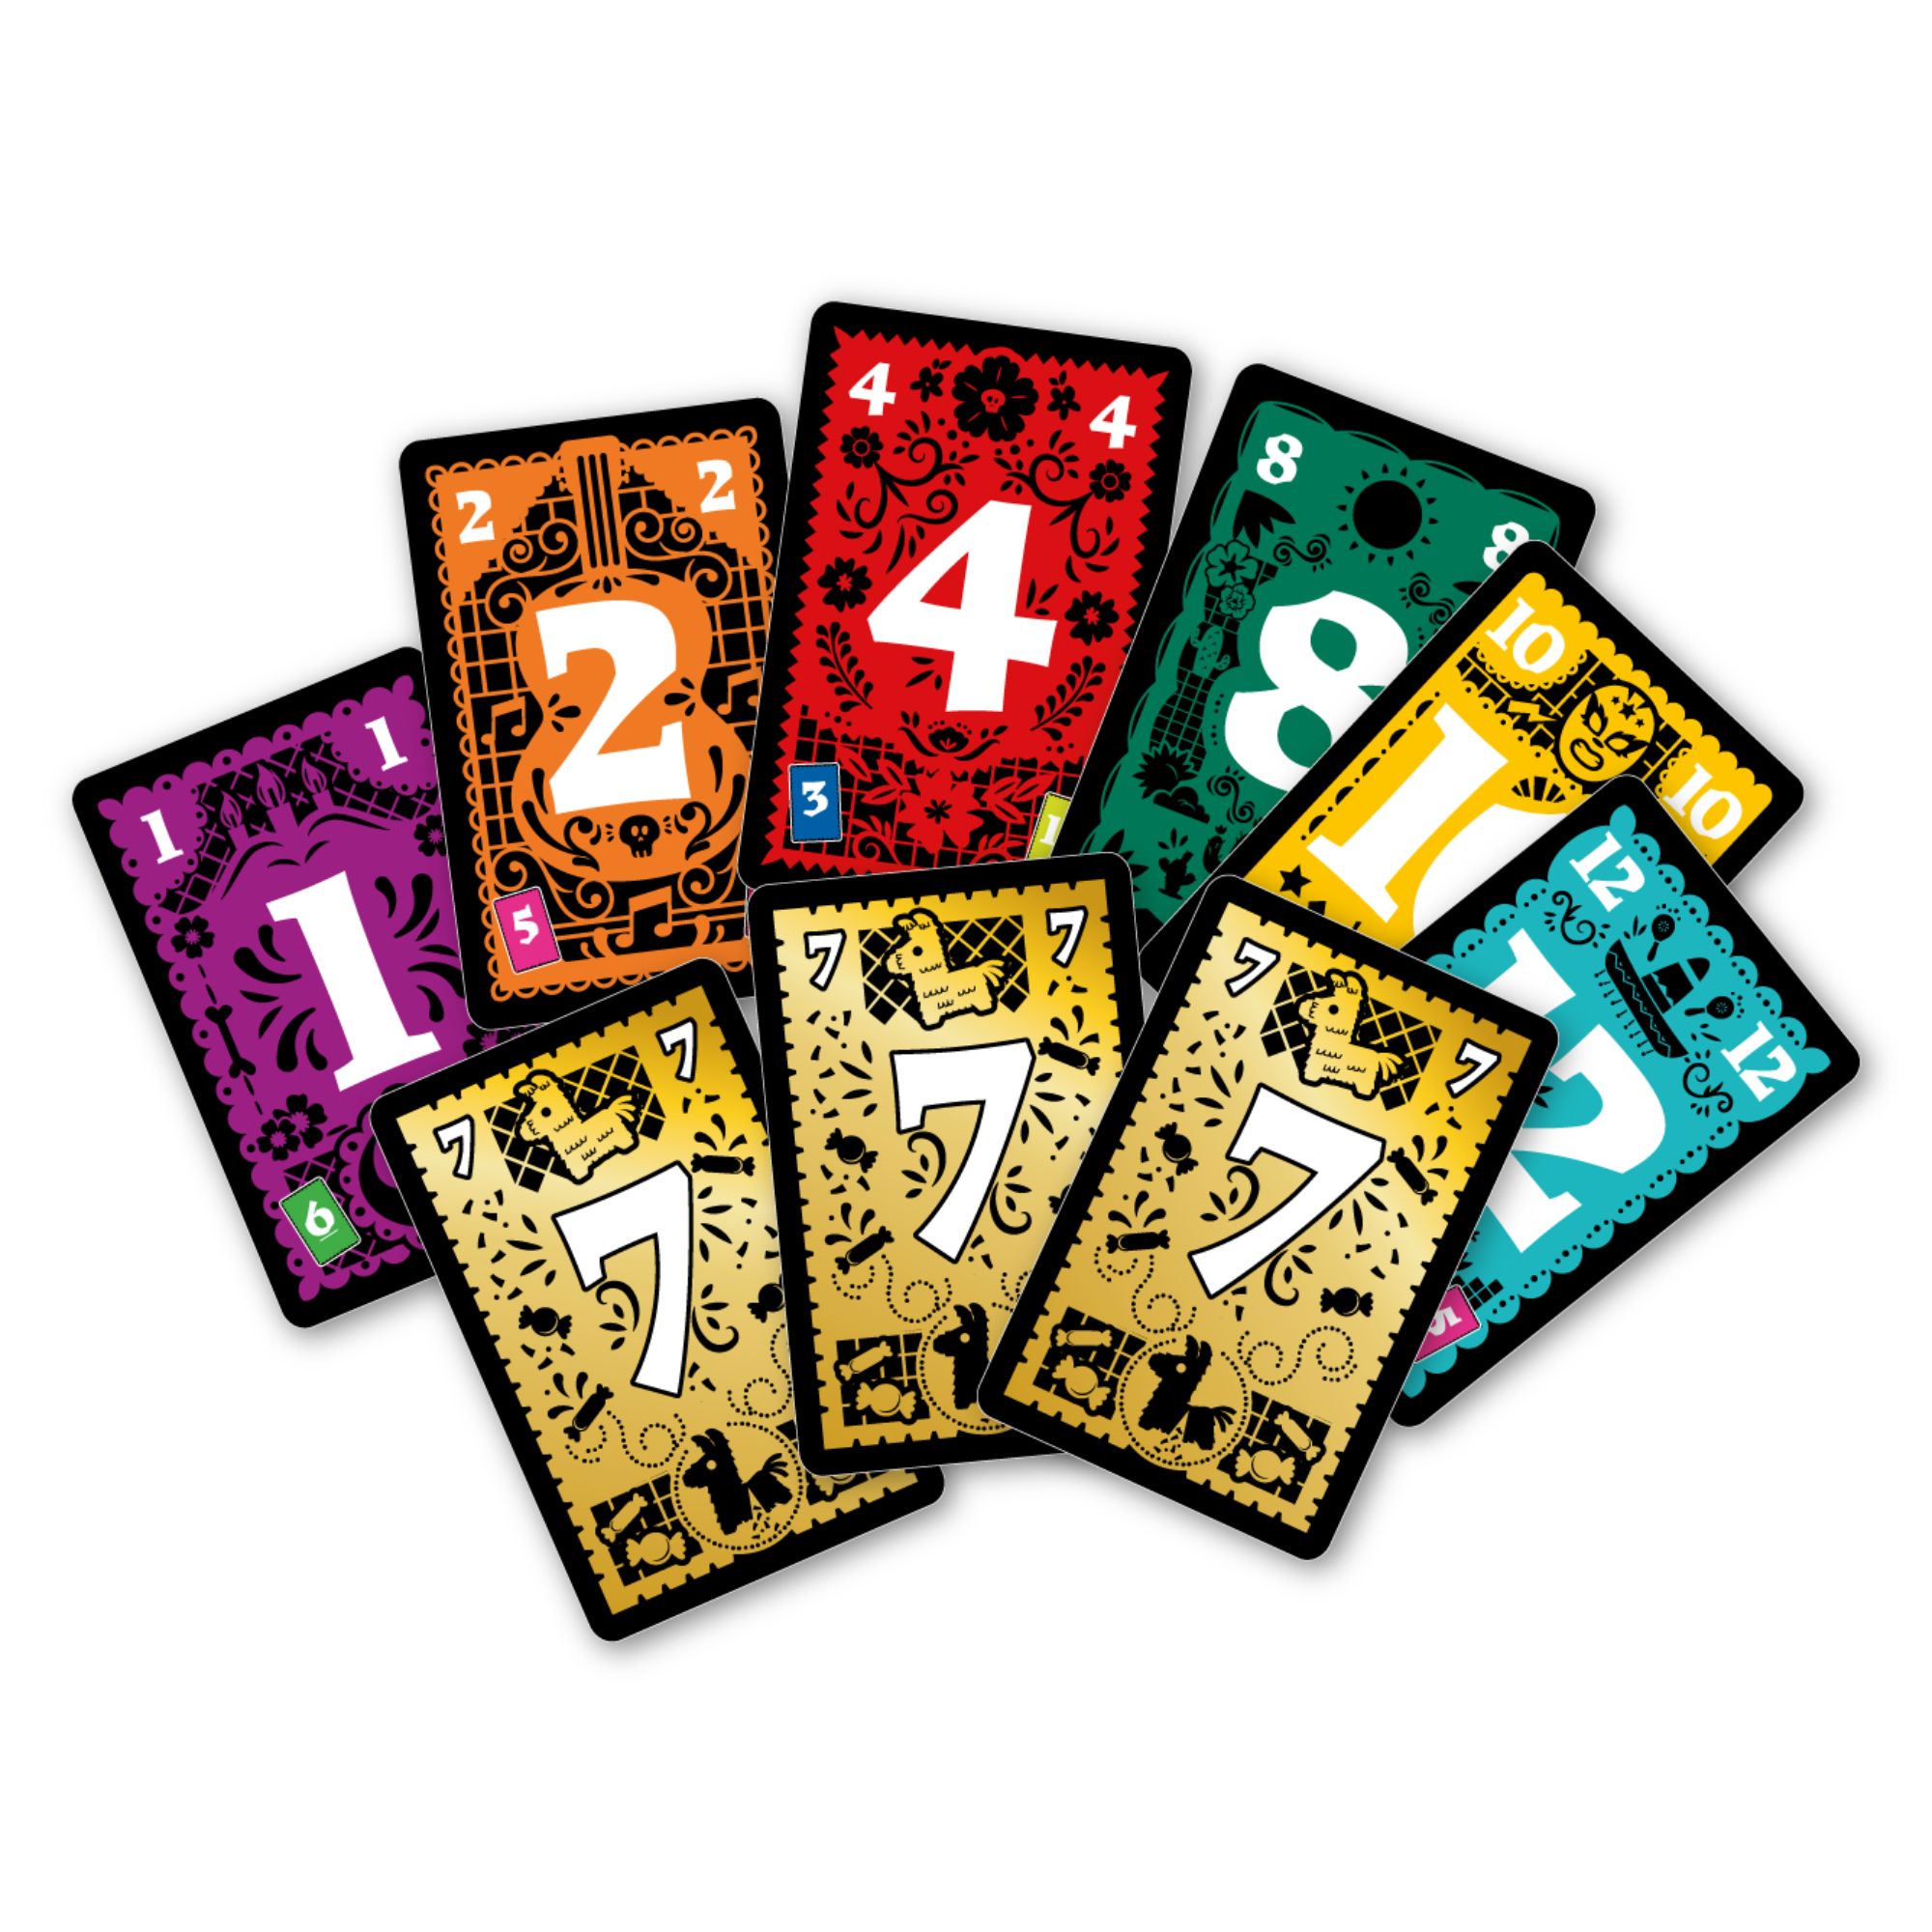 Tabuleiro ou cartas! Cinco jogos cooperativos para divertir a galera